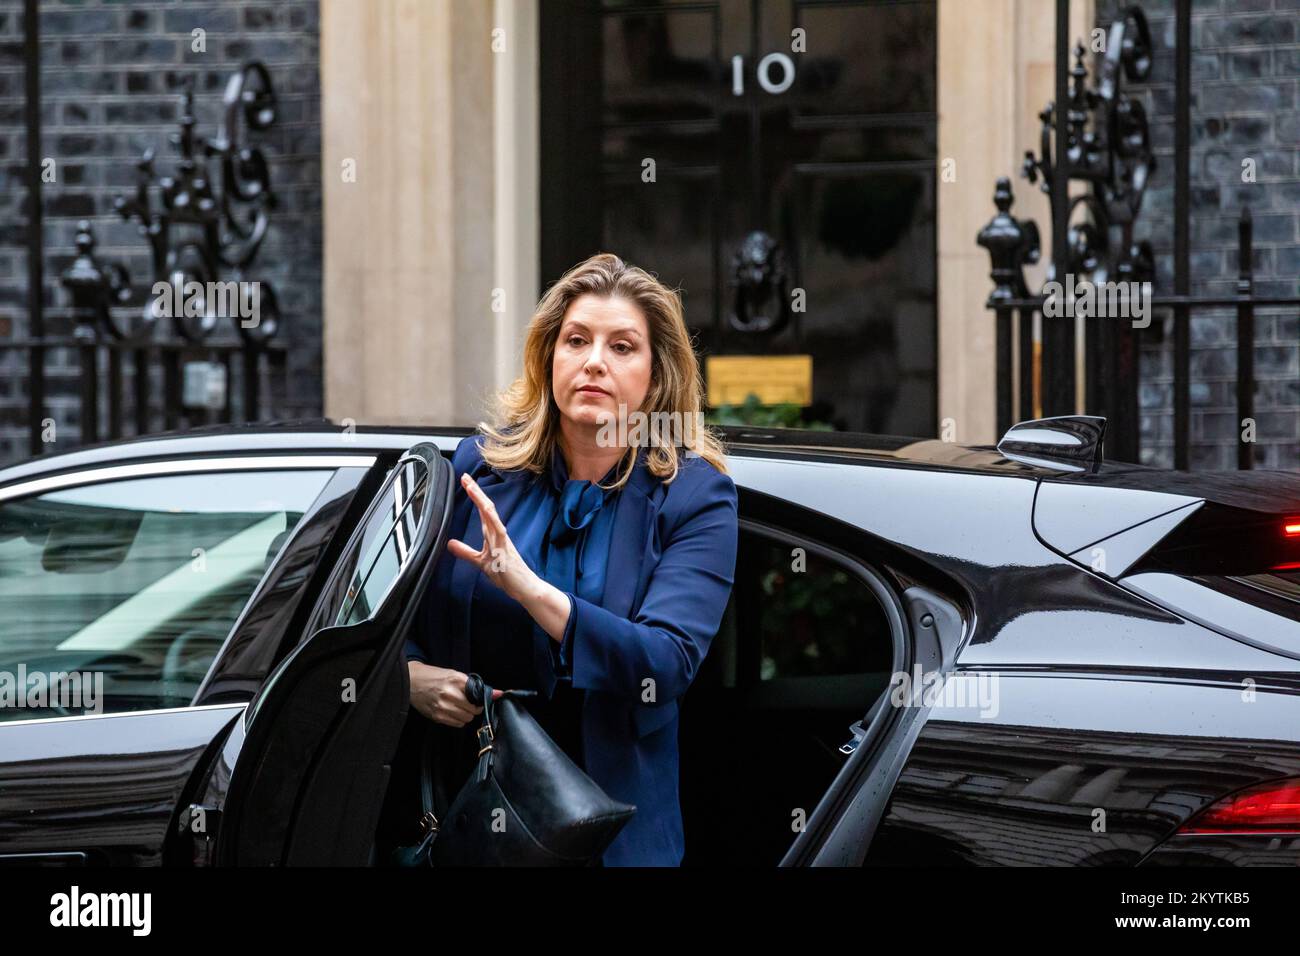 Penny Mordtante, Lord-président du Conseil et leader de la Chambre des communes, à l'extérieur du numéro 10 Downing Street à Londres Banque D'Images